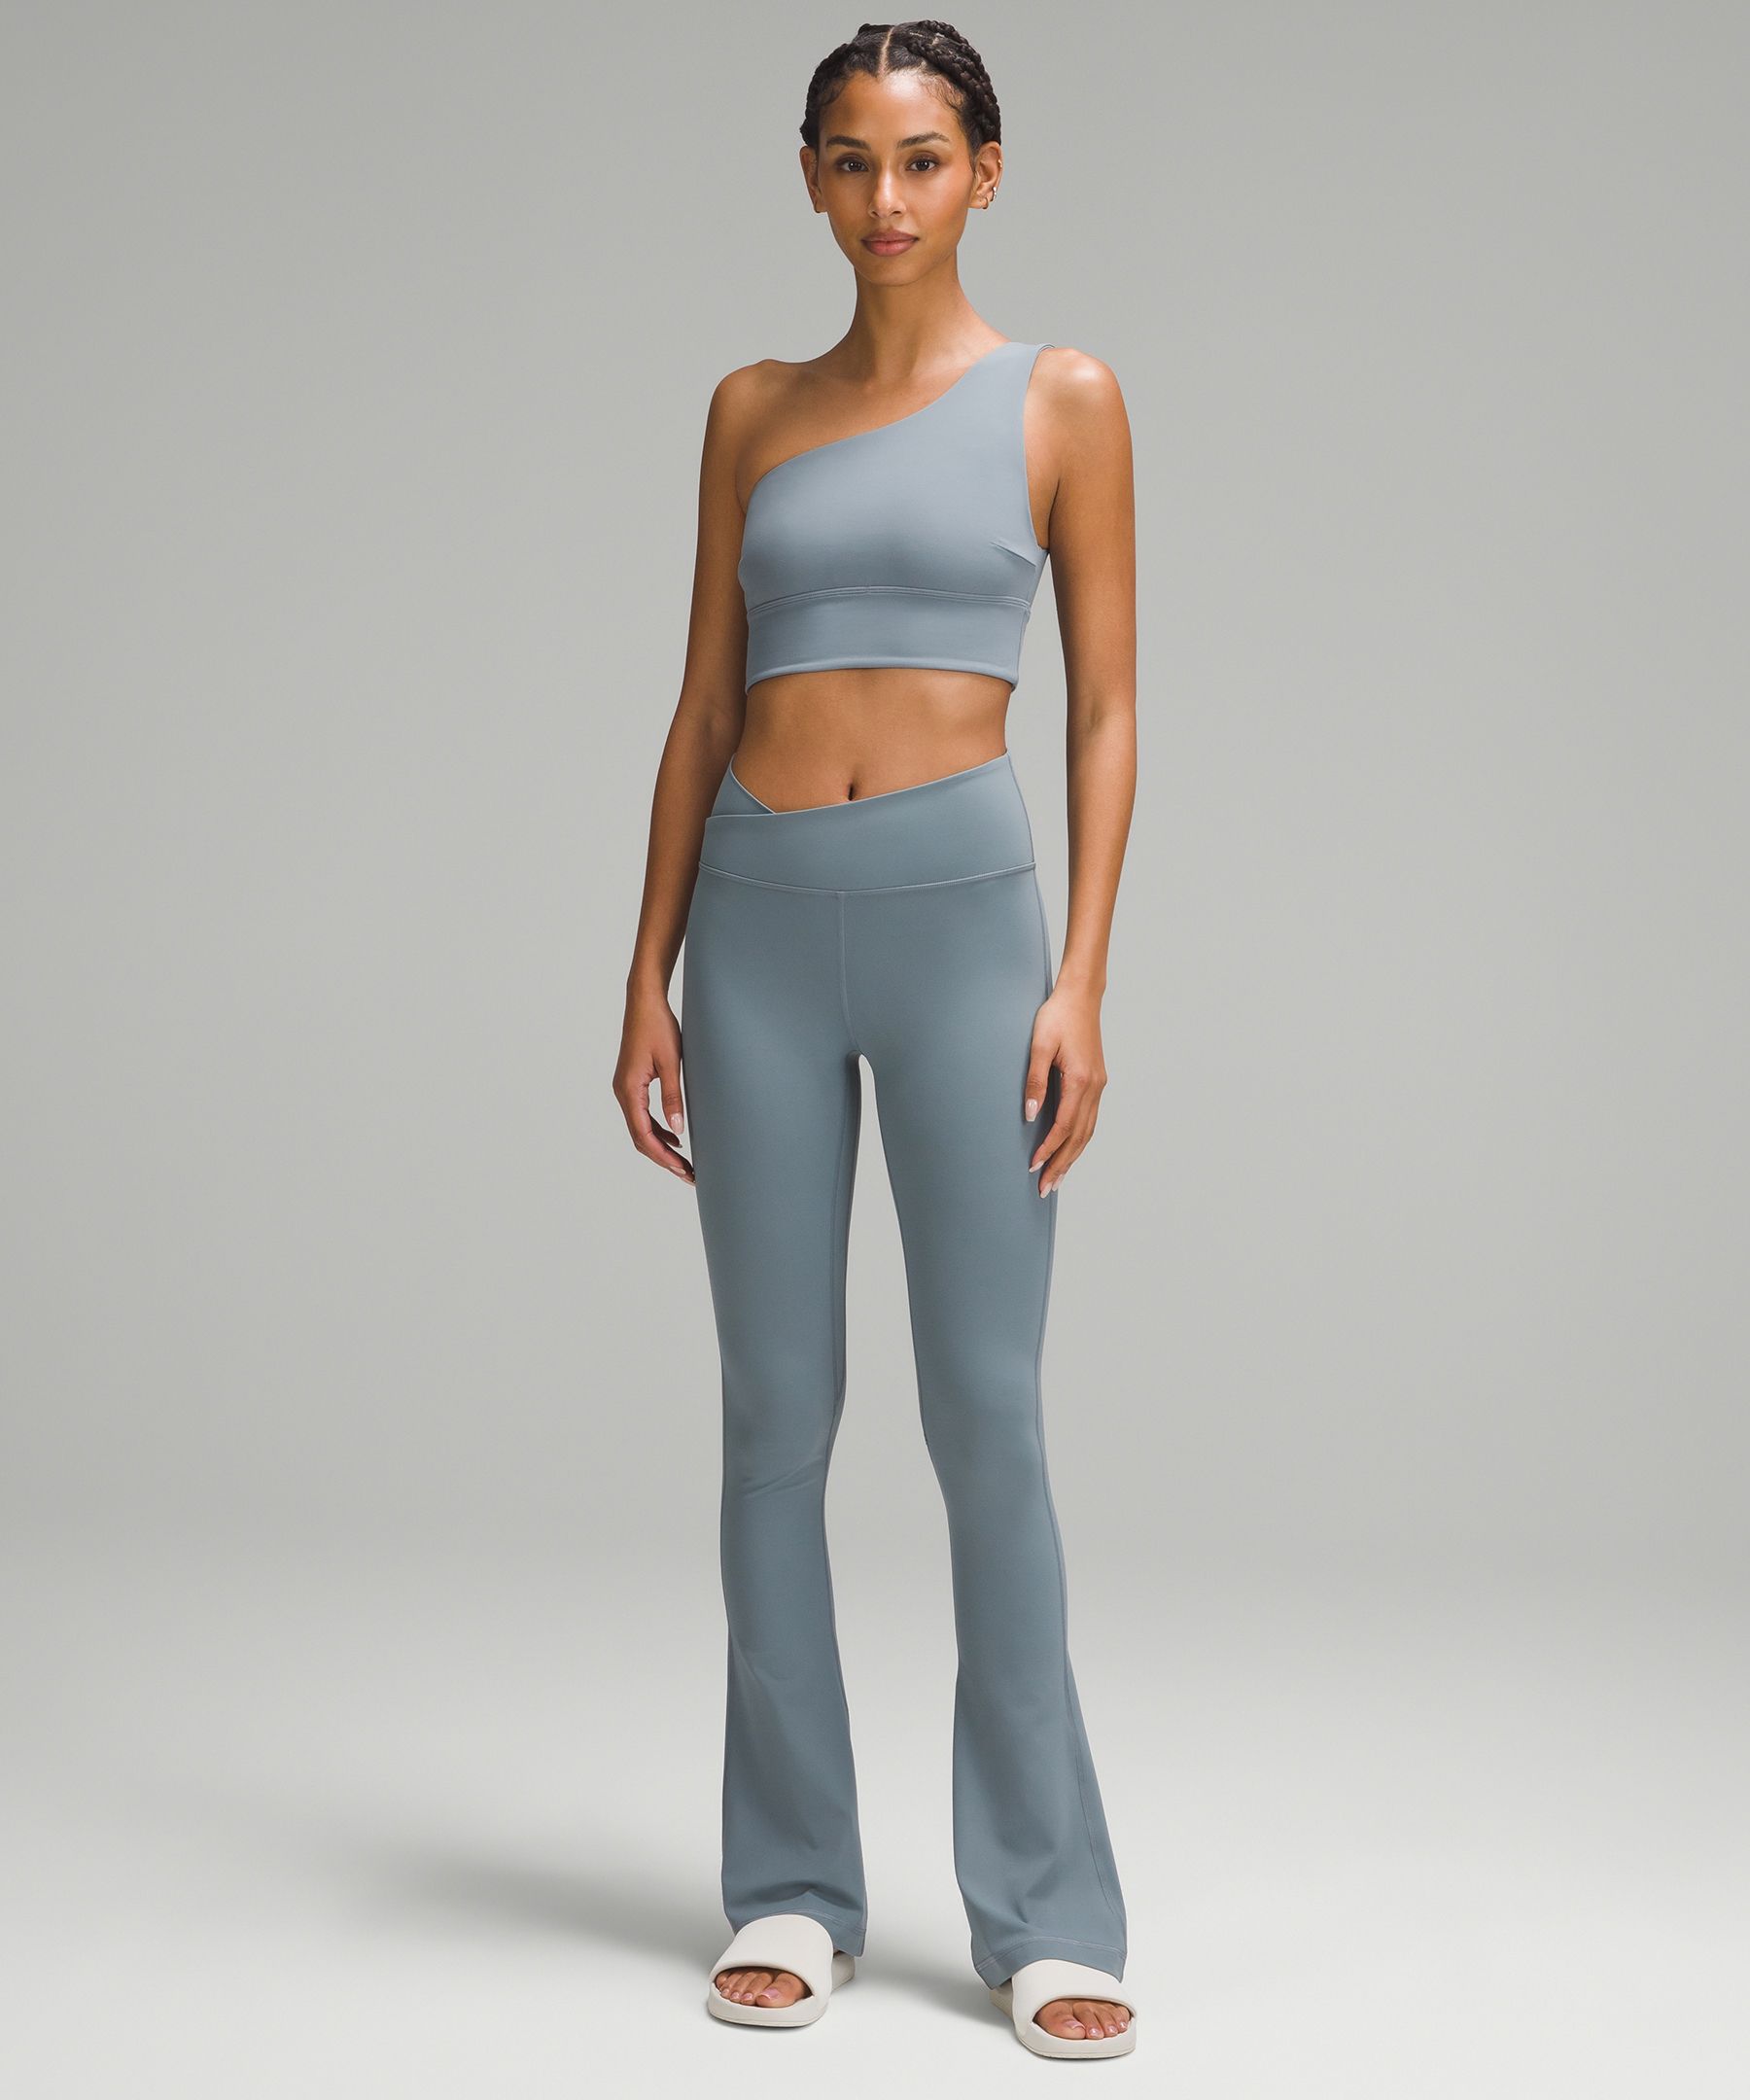 Lululemon Align High Rise Mini Flare Pant 32 - Retail, - Lululemon  clothing